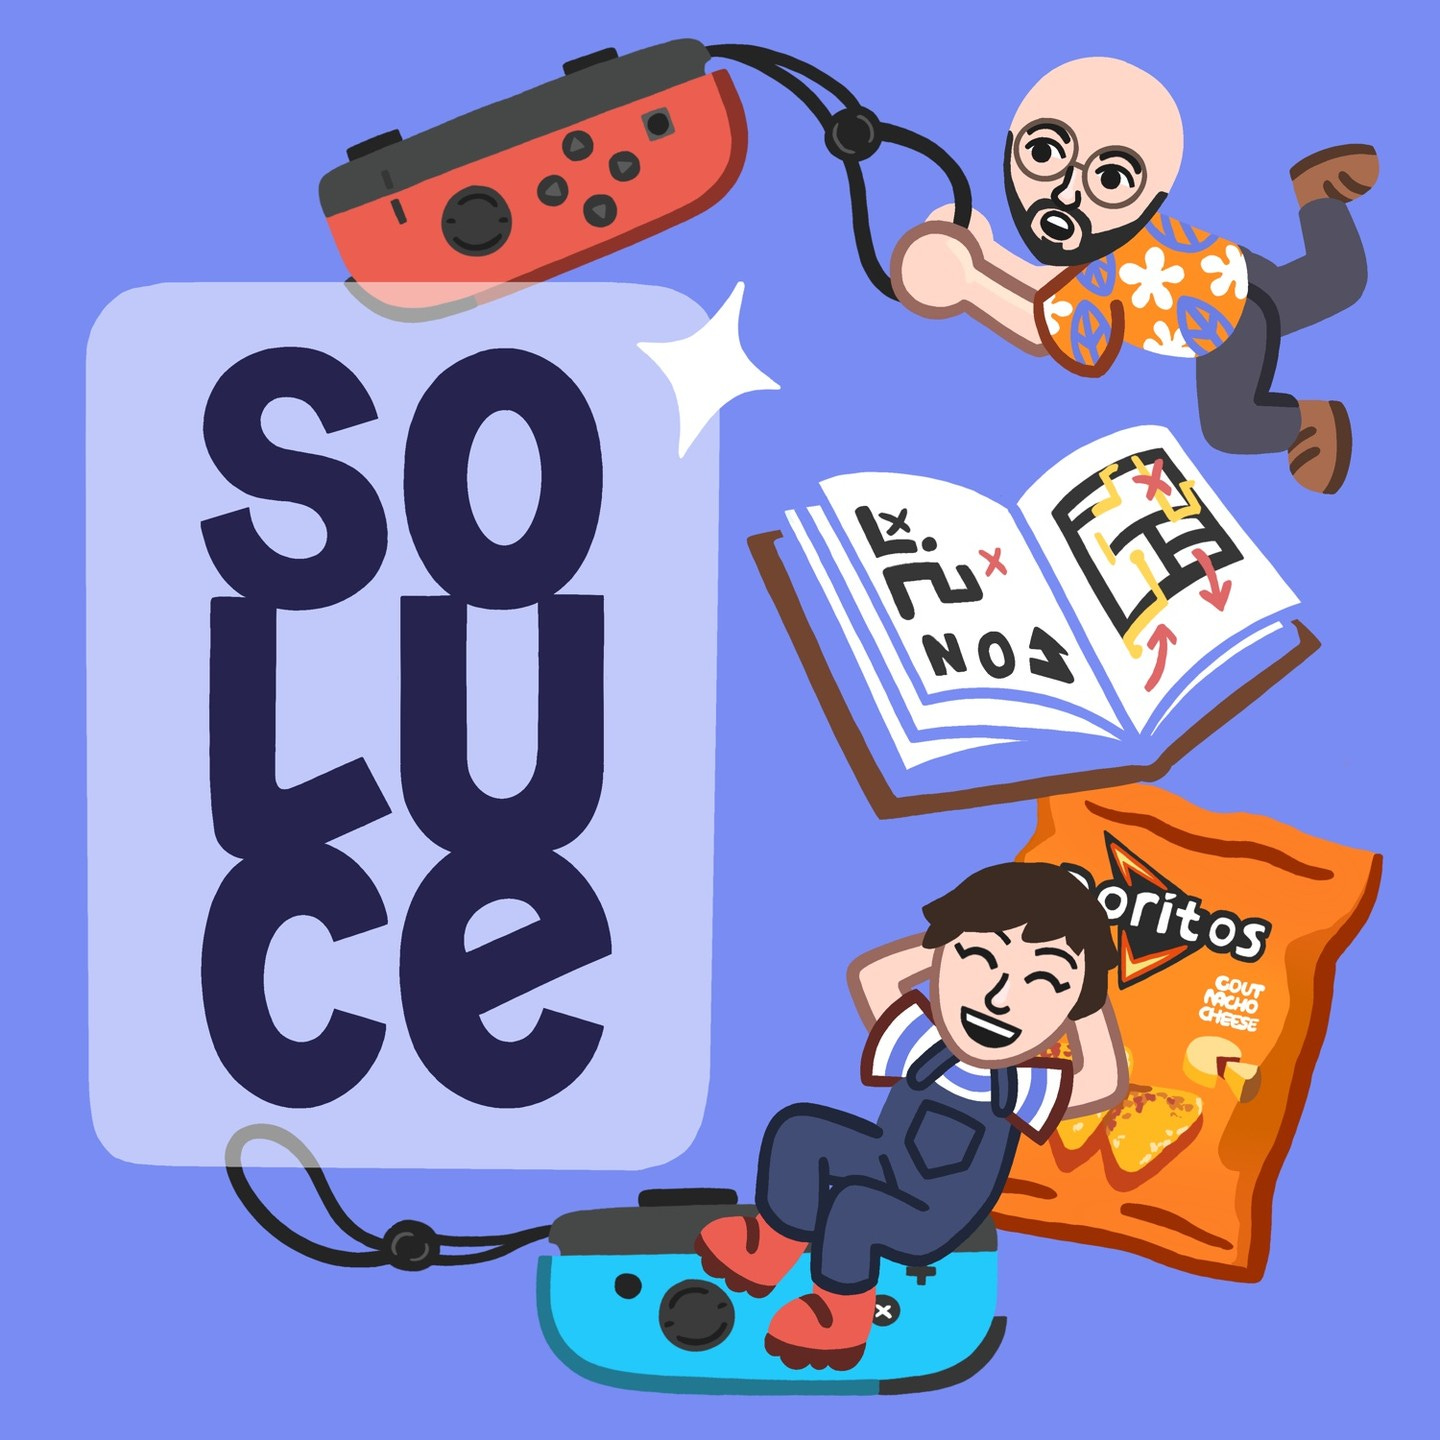 Visuel du podcast Soluce, avec les animateurs illustrés, entourés d'une manette de Switch, d'un livre avec la soluce et d'un paquet de Doritos, le tout illustré aussi.